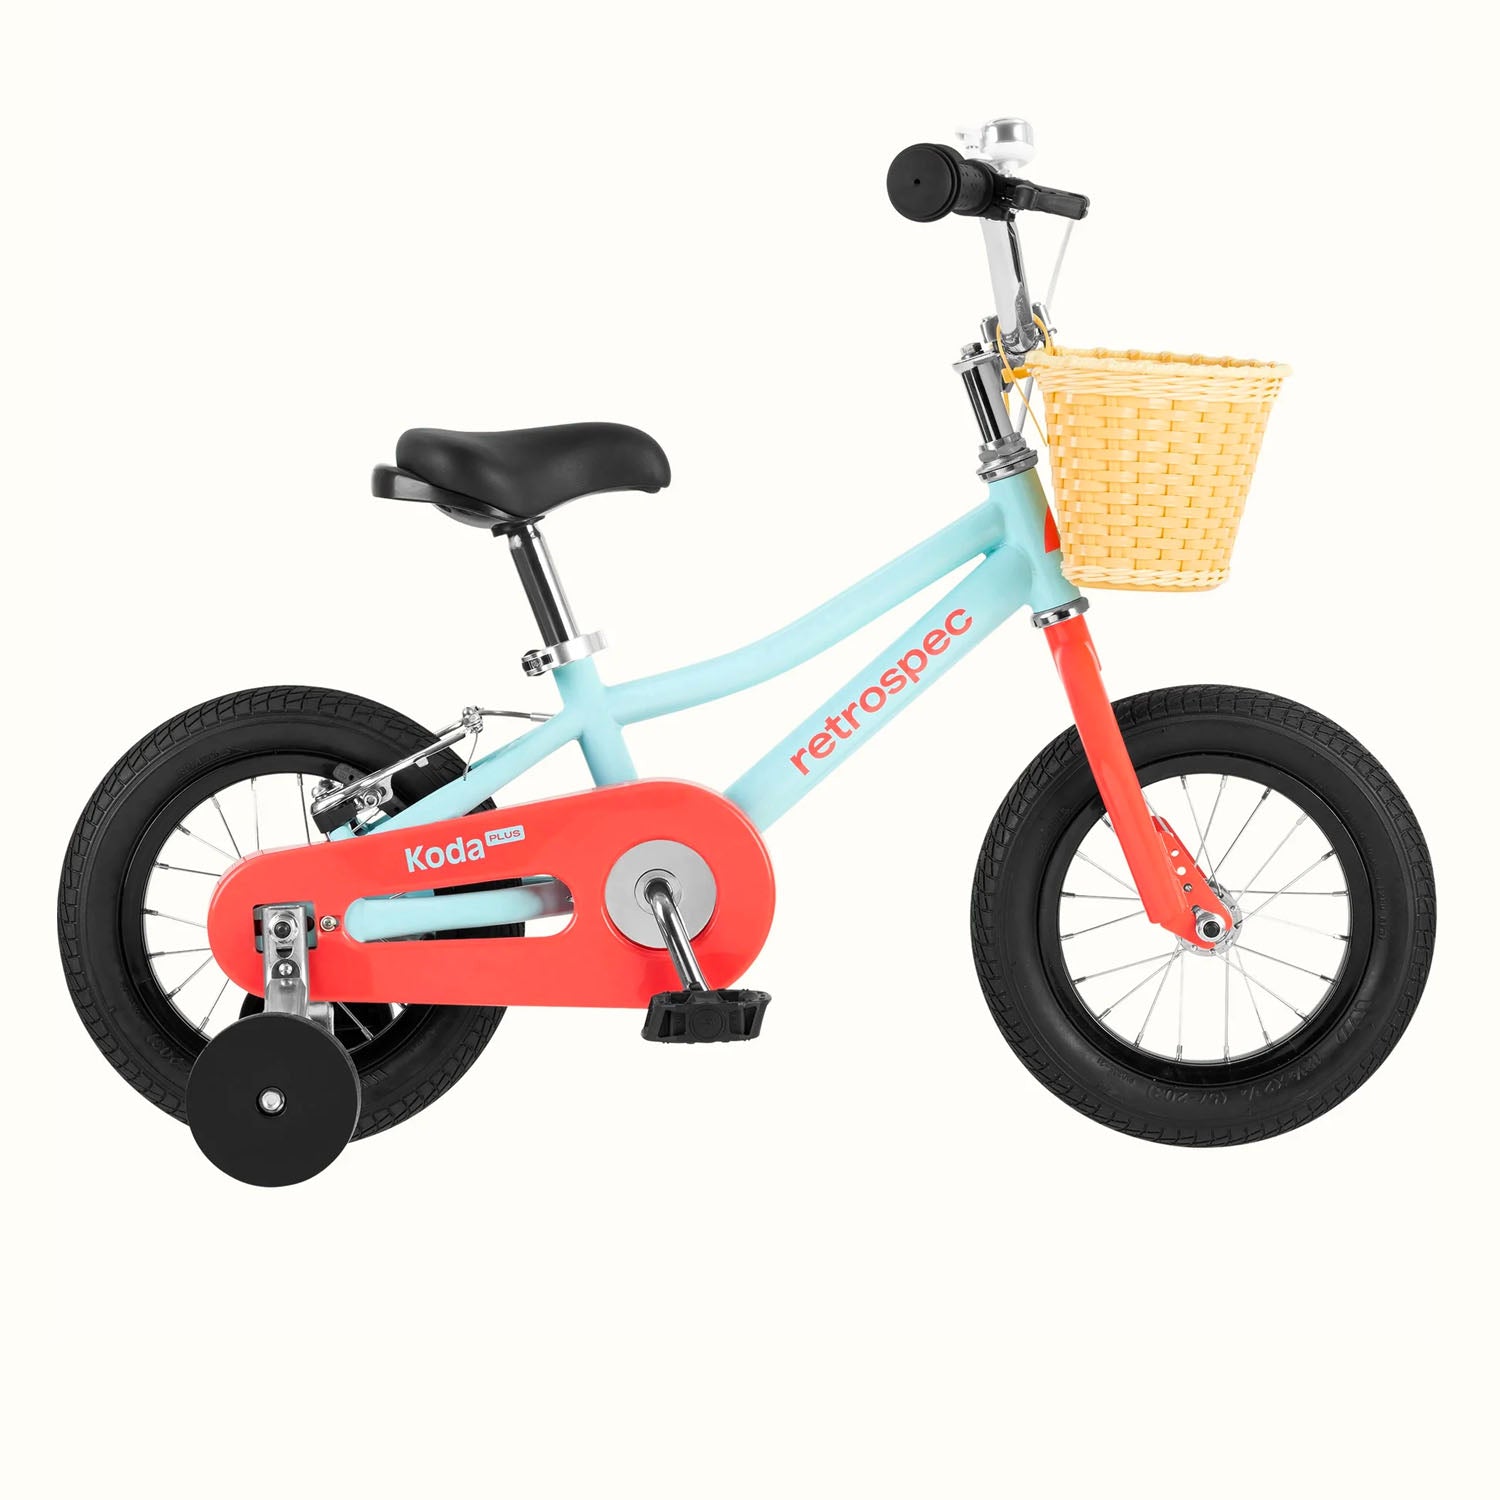 Retrospec Koda Plus 12" Kids Bike > 12" > Starfish, Bixby Bicycles, bixbybicycles.com